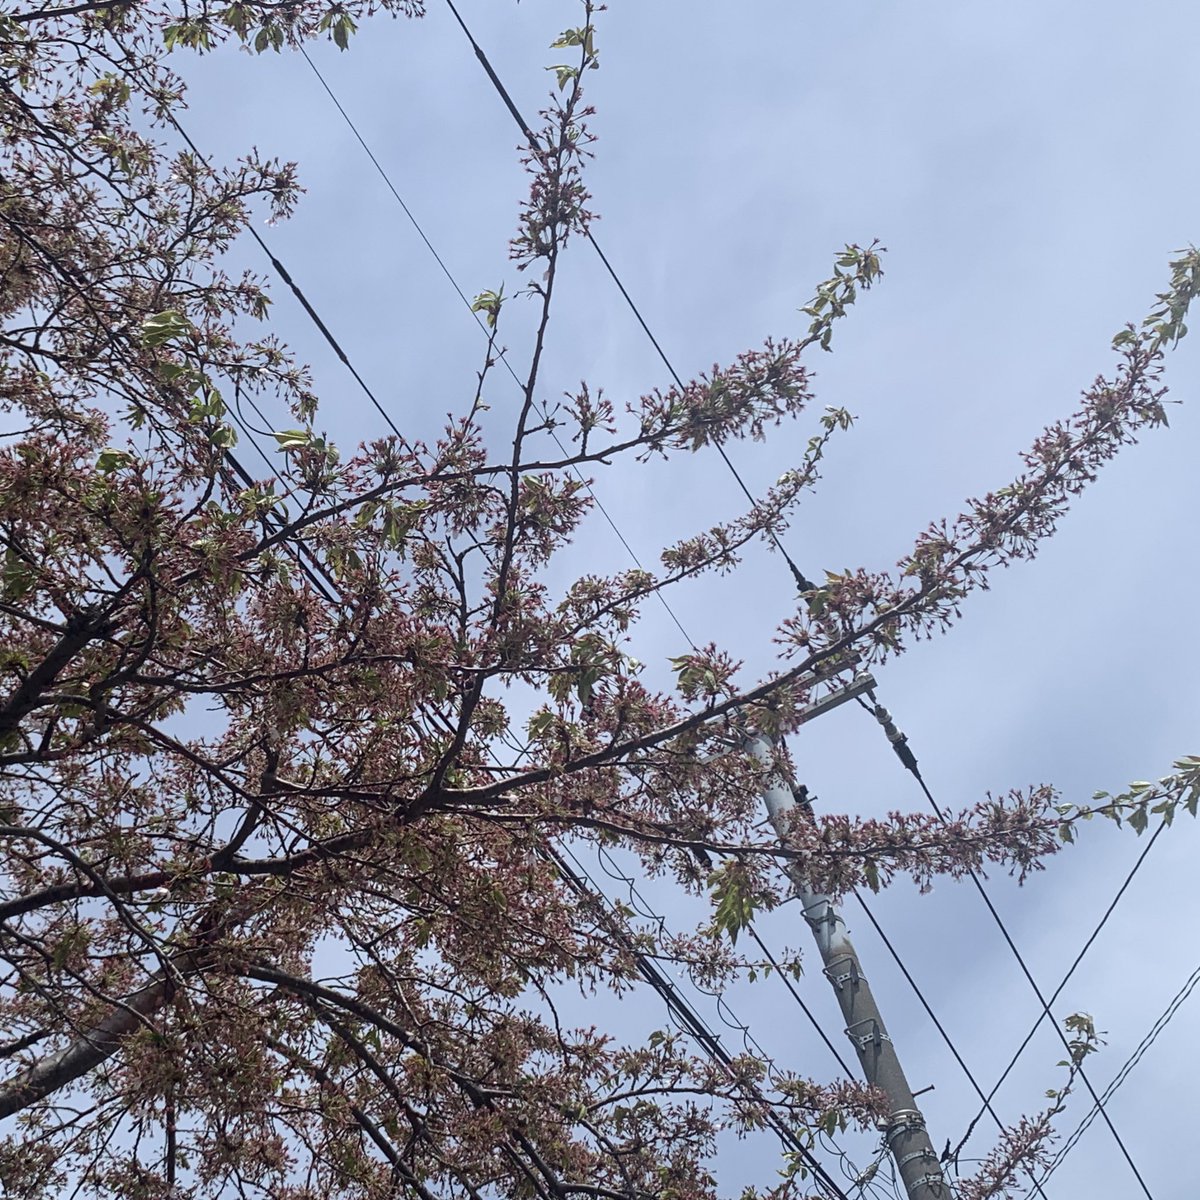 近所のソメイヨシノは終わりました。

千島ザクラと蝦夷ヤマザクラは見頃ですね。

平岡公園で梅見ながら梅ソフトなんてのもいいかもしれません。

近場で春を感じる連休最終日なんていかがでしょうか？

#さくら 
#うめソフトクリーム
#GWはフォロワーさんが増えるらしい